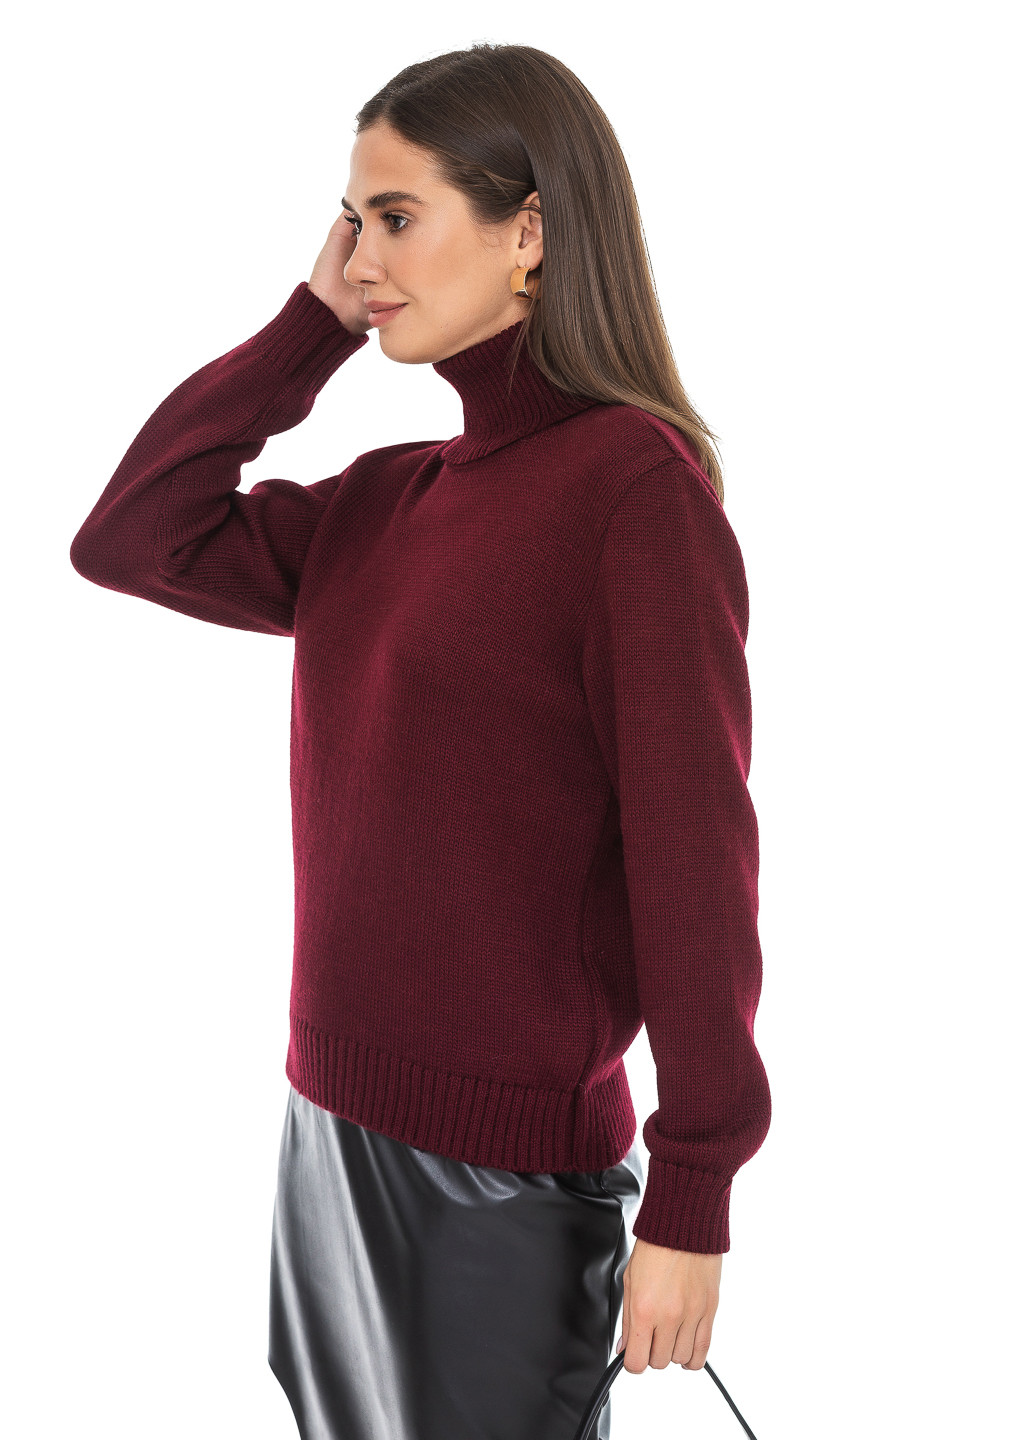 Бордовый зимний классический женский свитер SVTR